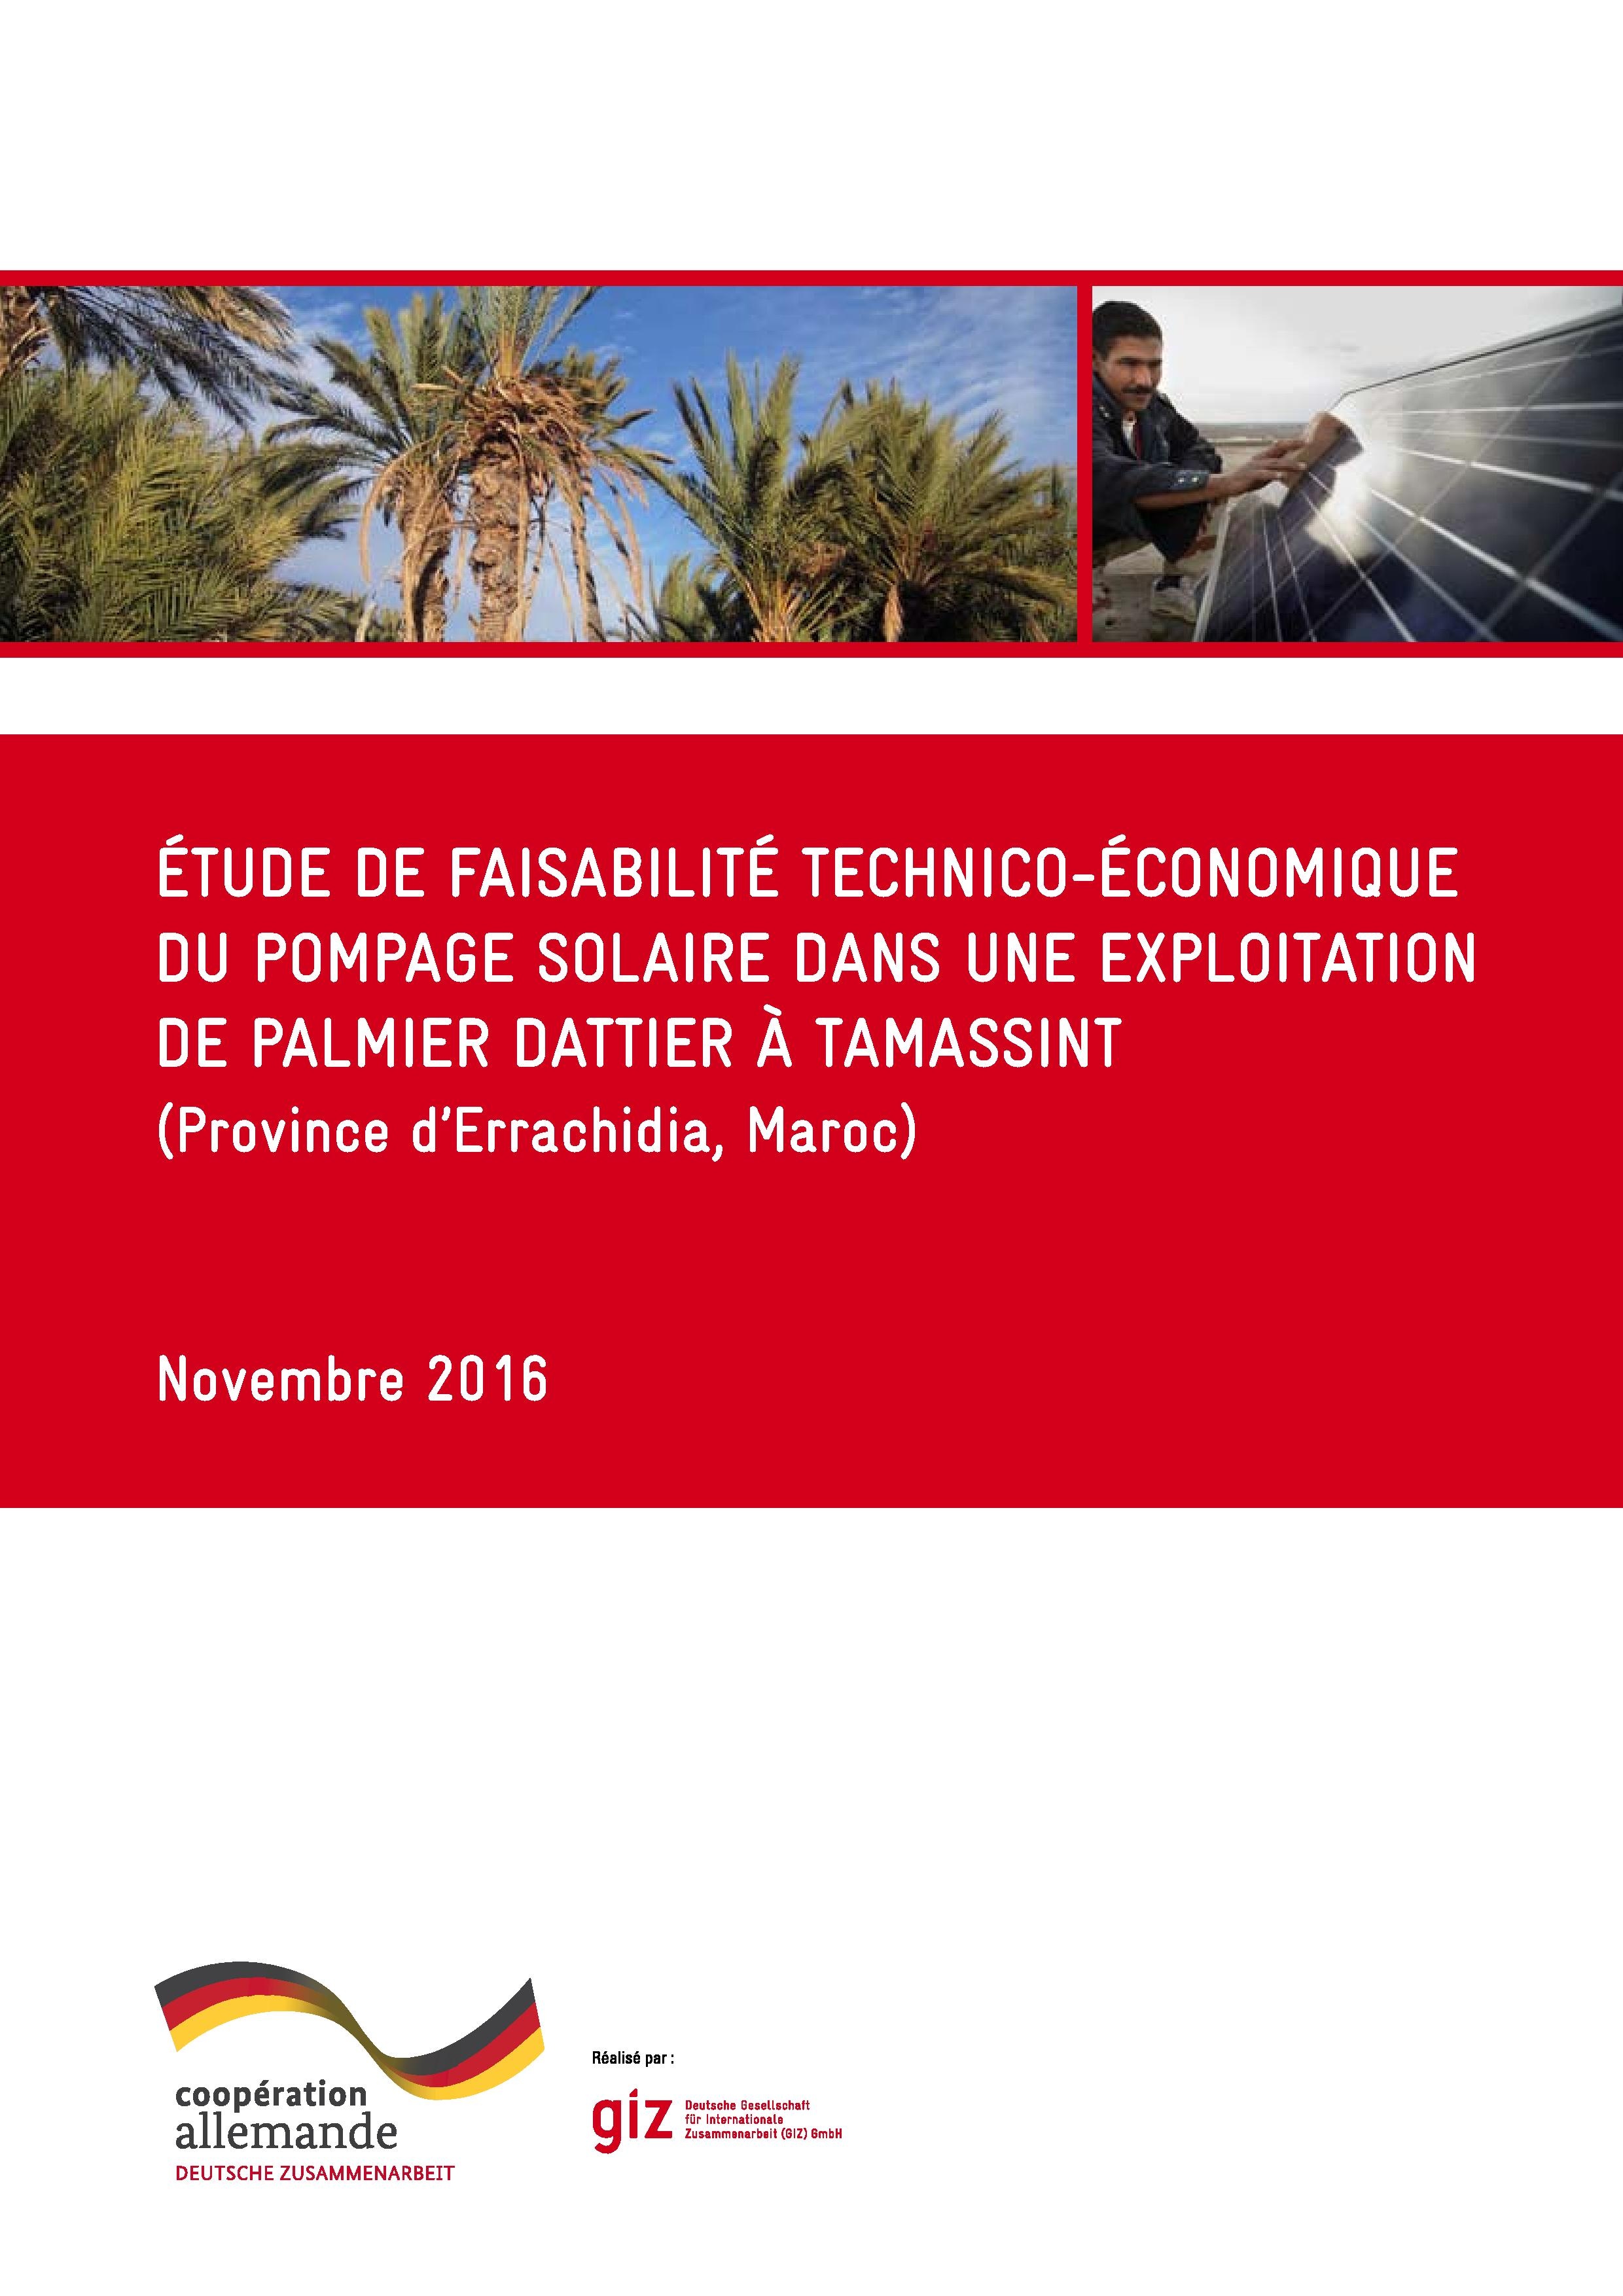 Etude technico-économique pour des installations de pompage solaire dans le cadre de l’extension des superficies des palmeraies pour l’exploitation du palmier dattier à Tamassint